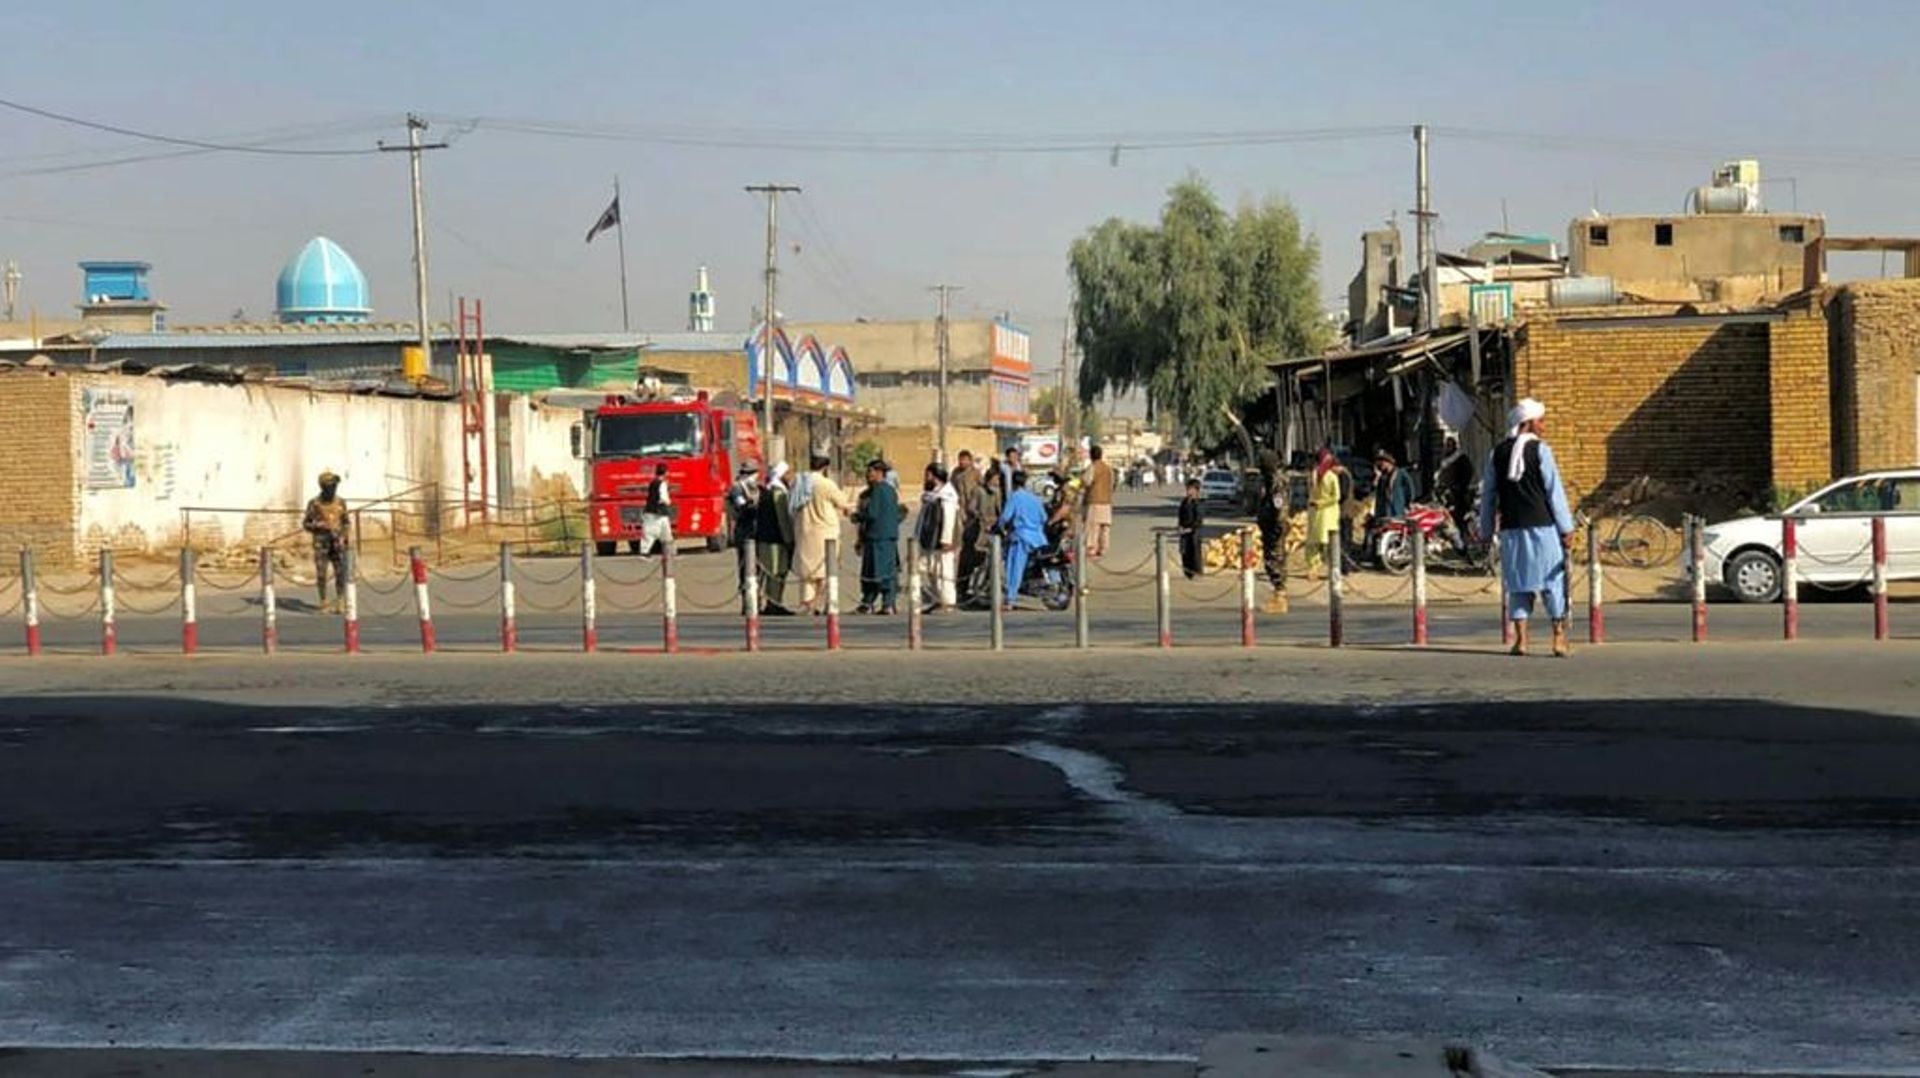 Des talibans montent la garde près d'une mosquée chiite après des explosions meurtrières, le 15 octobre 2021 à Kandahar, en Afghanistan